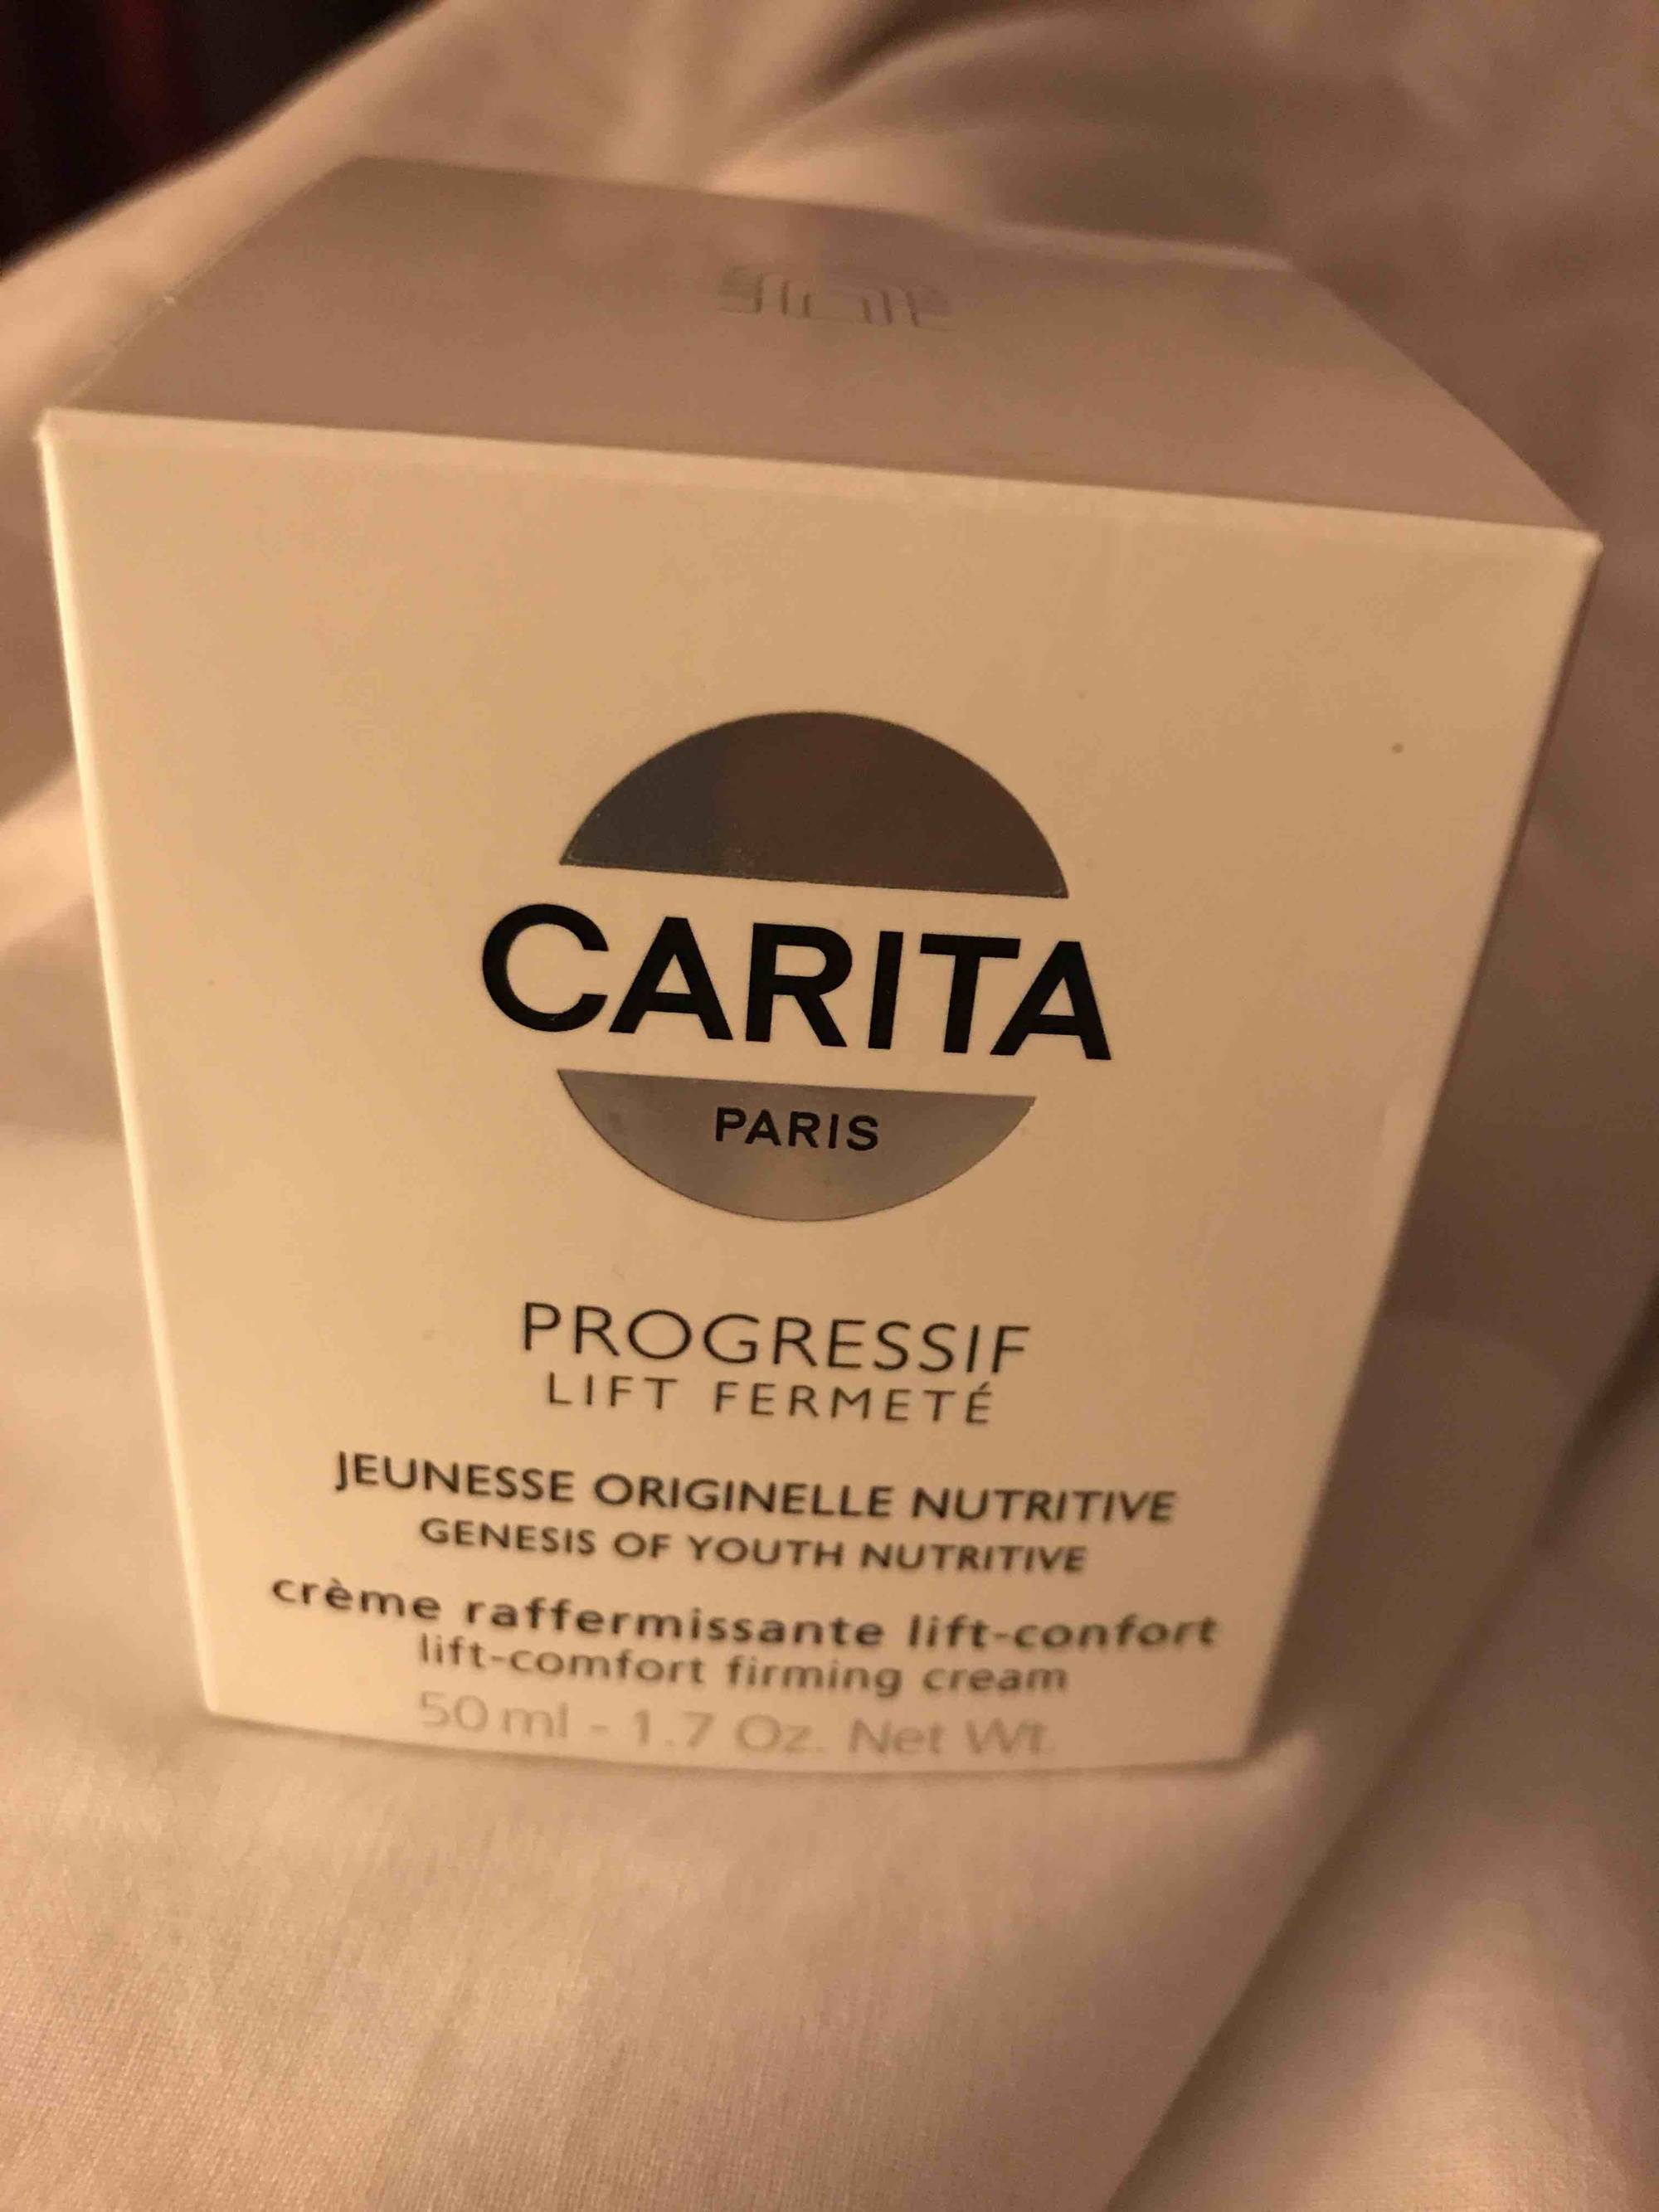 CARITA - Progressif lift fermeté - Crème raffermissante lift-comfort